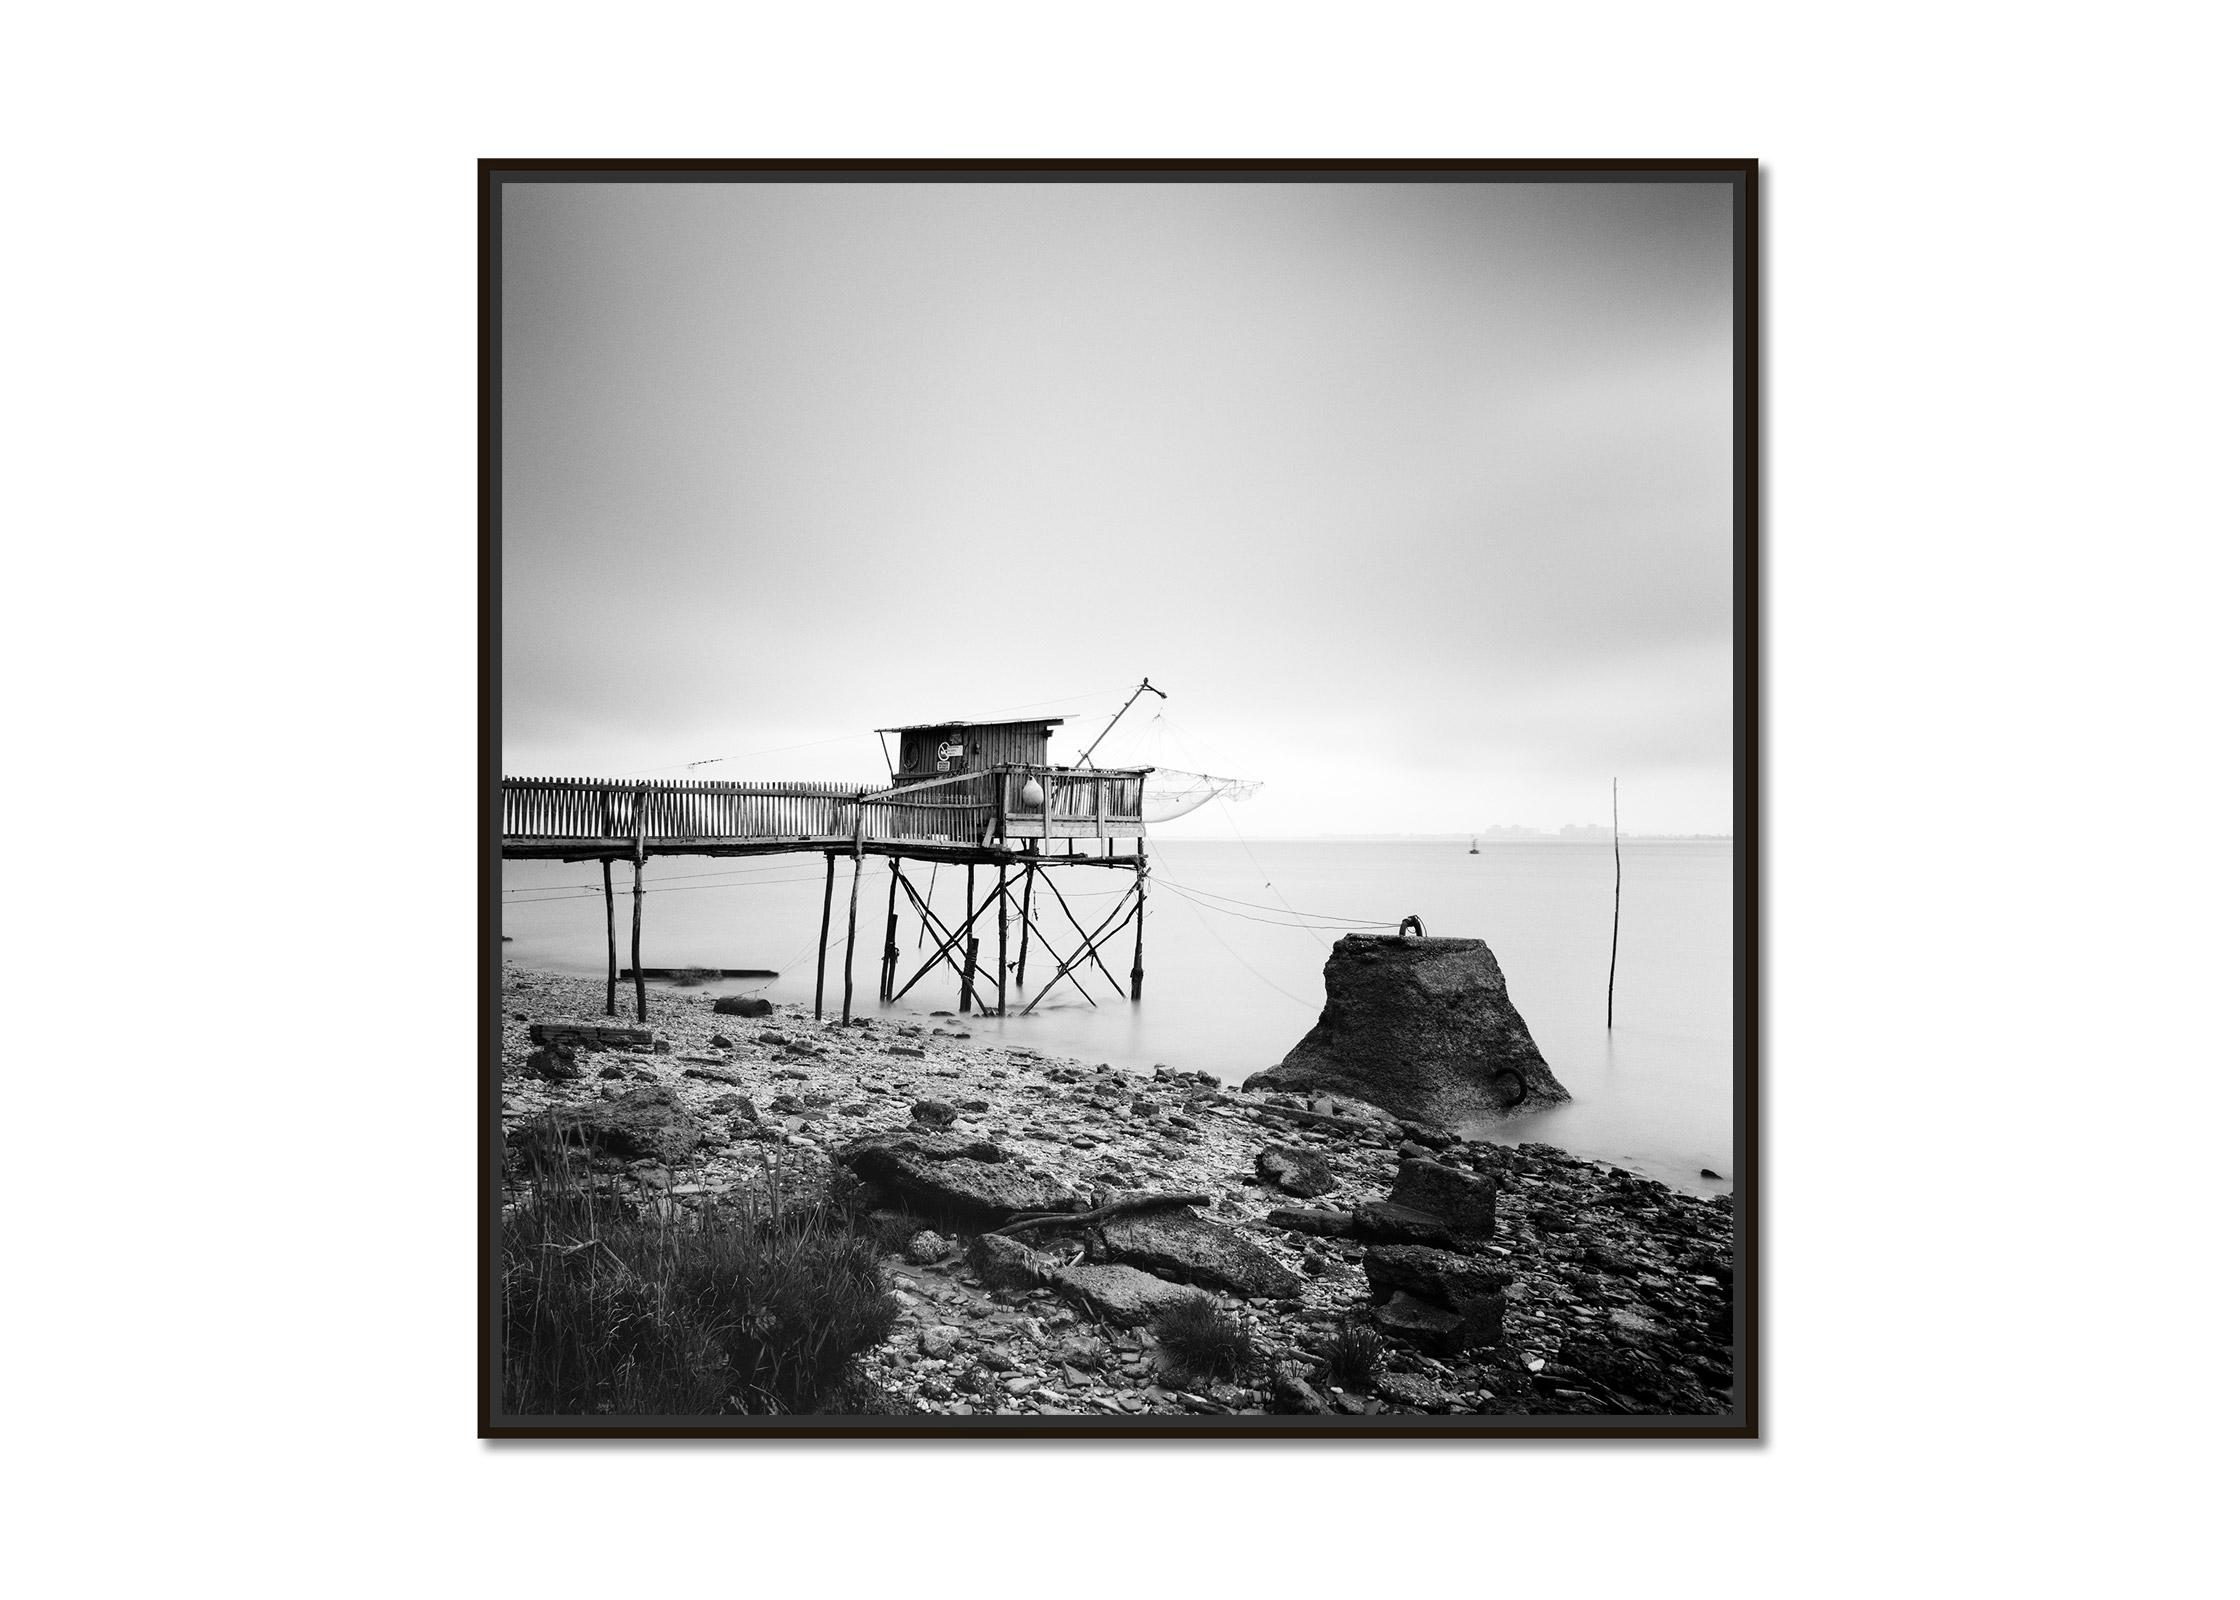 Stilt Haus, Fischen, Muschelfisch, Frankreich, Schwarz-Weiß-Fotografie-Landschaft – Photograph von Gerald Berghammer